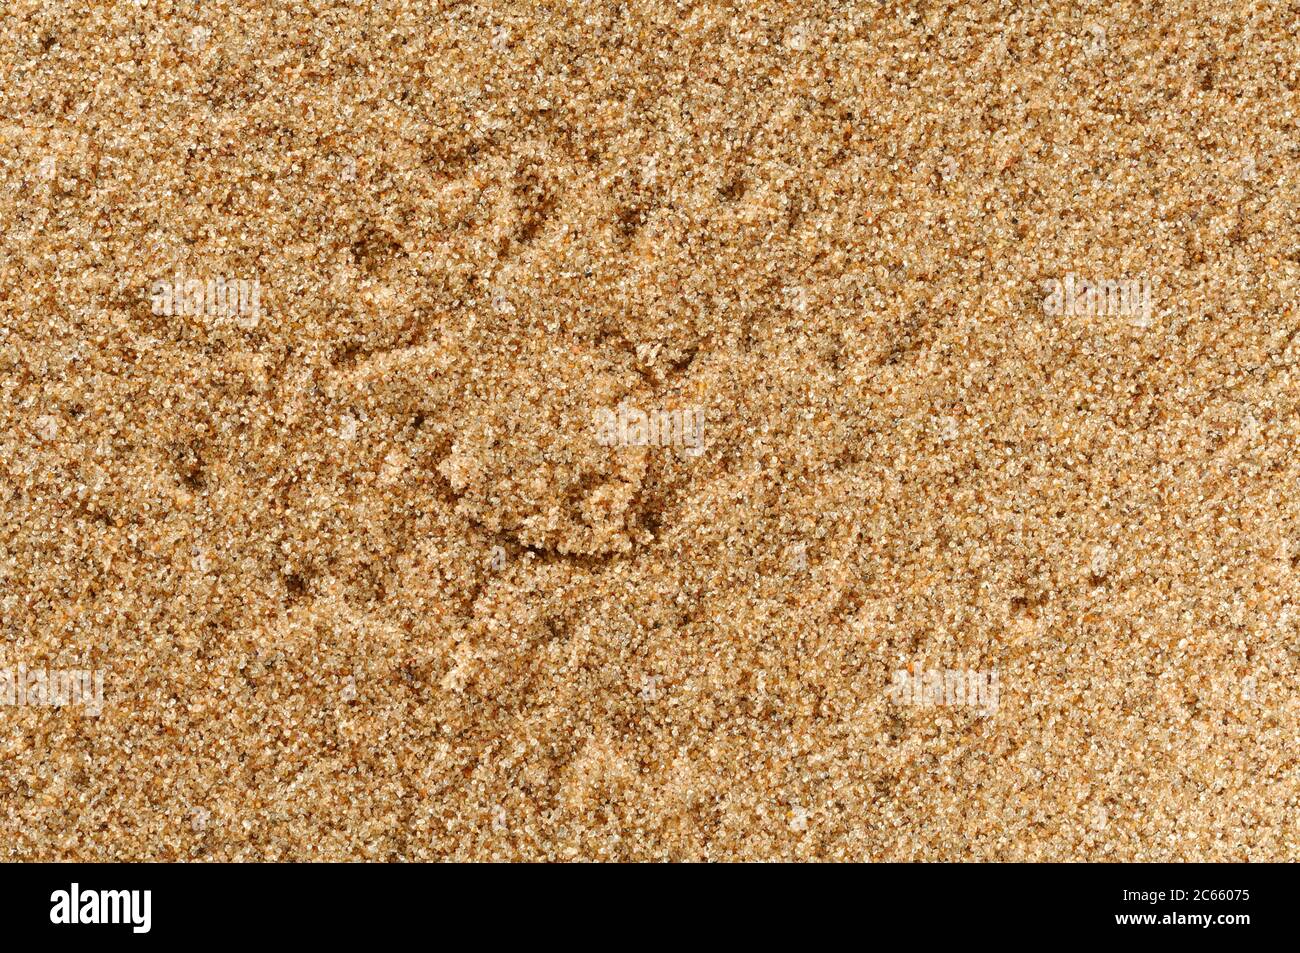 Ruscello di ragno delle dune (Leucorchestris arenicola) nelle prime ore del mattino, le tracce nella sabbia raccontano la storia delle attività notturne nel deserto. Foto Stock